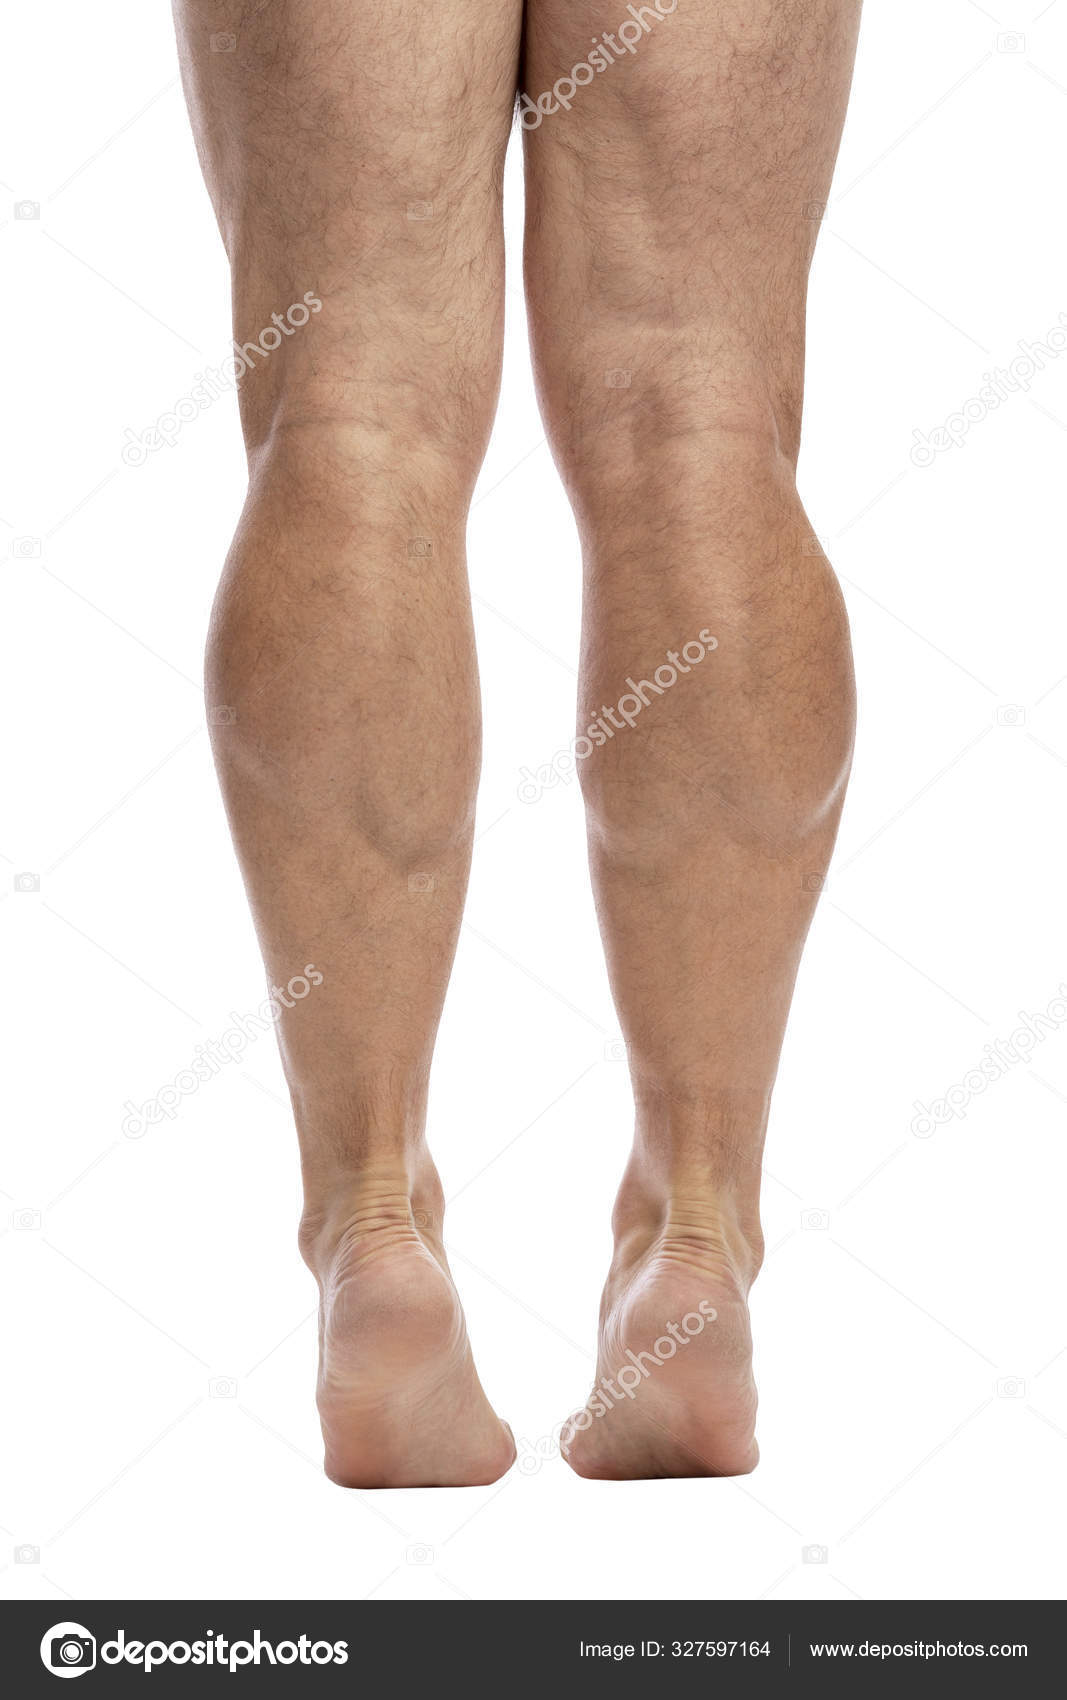 https://st3.depositphotos.com/13043572/32759/i/1600/depositphotos_327597164-stock-photo-mens-legs-to-the-knees.jpg